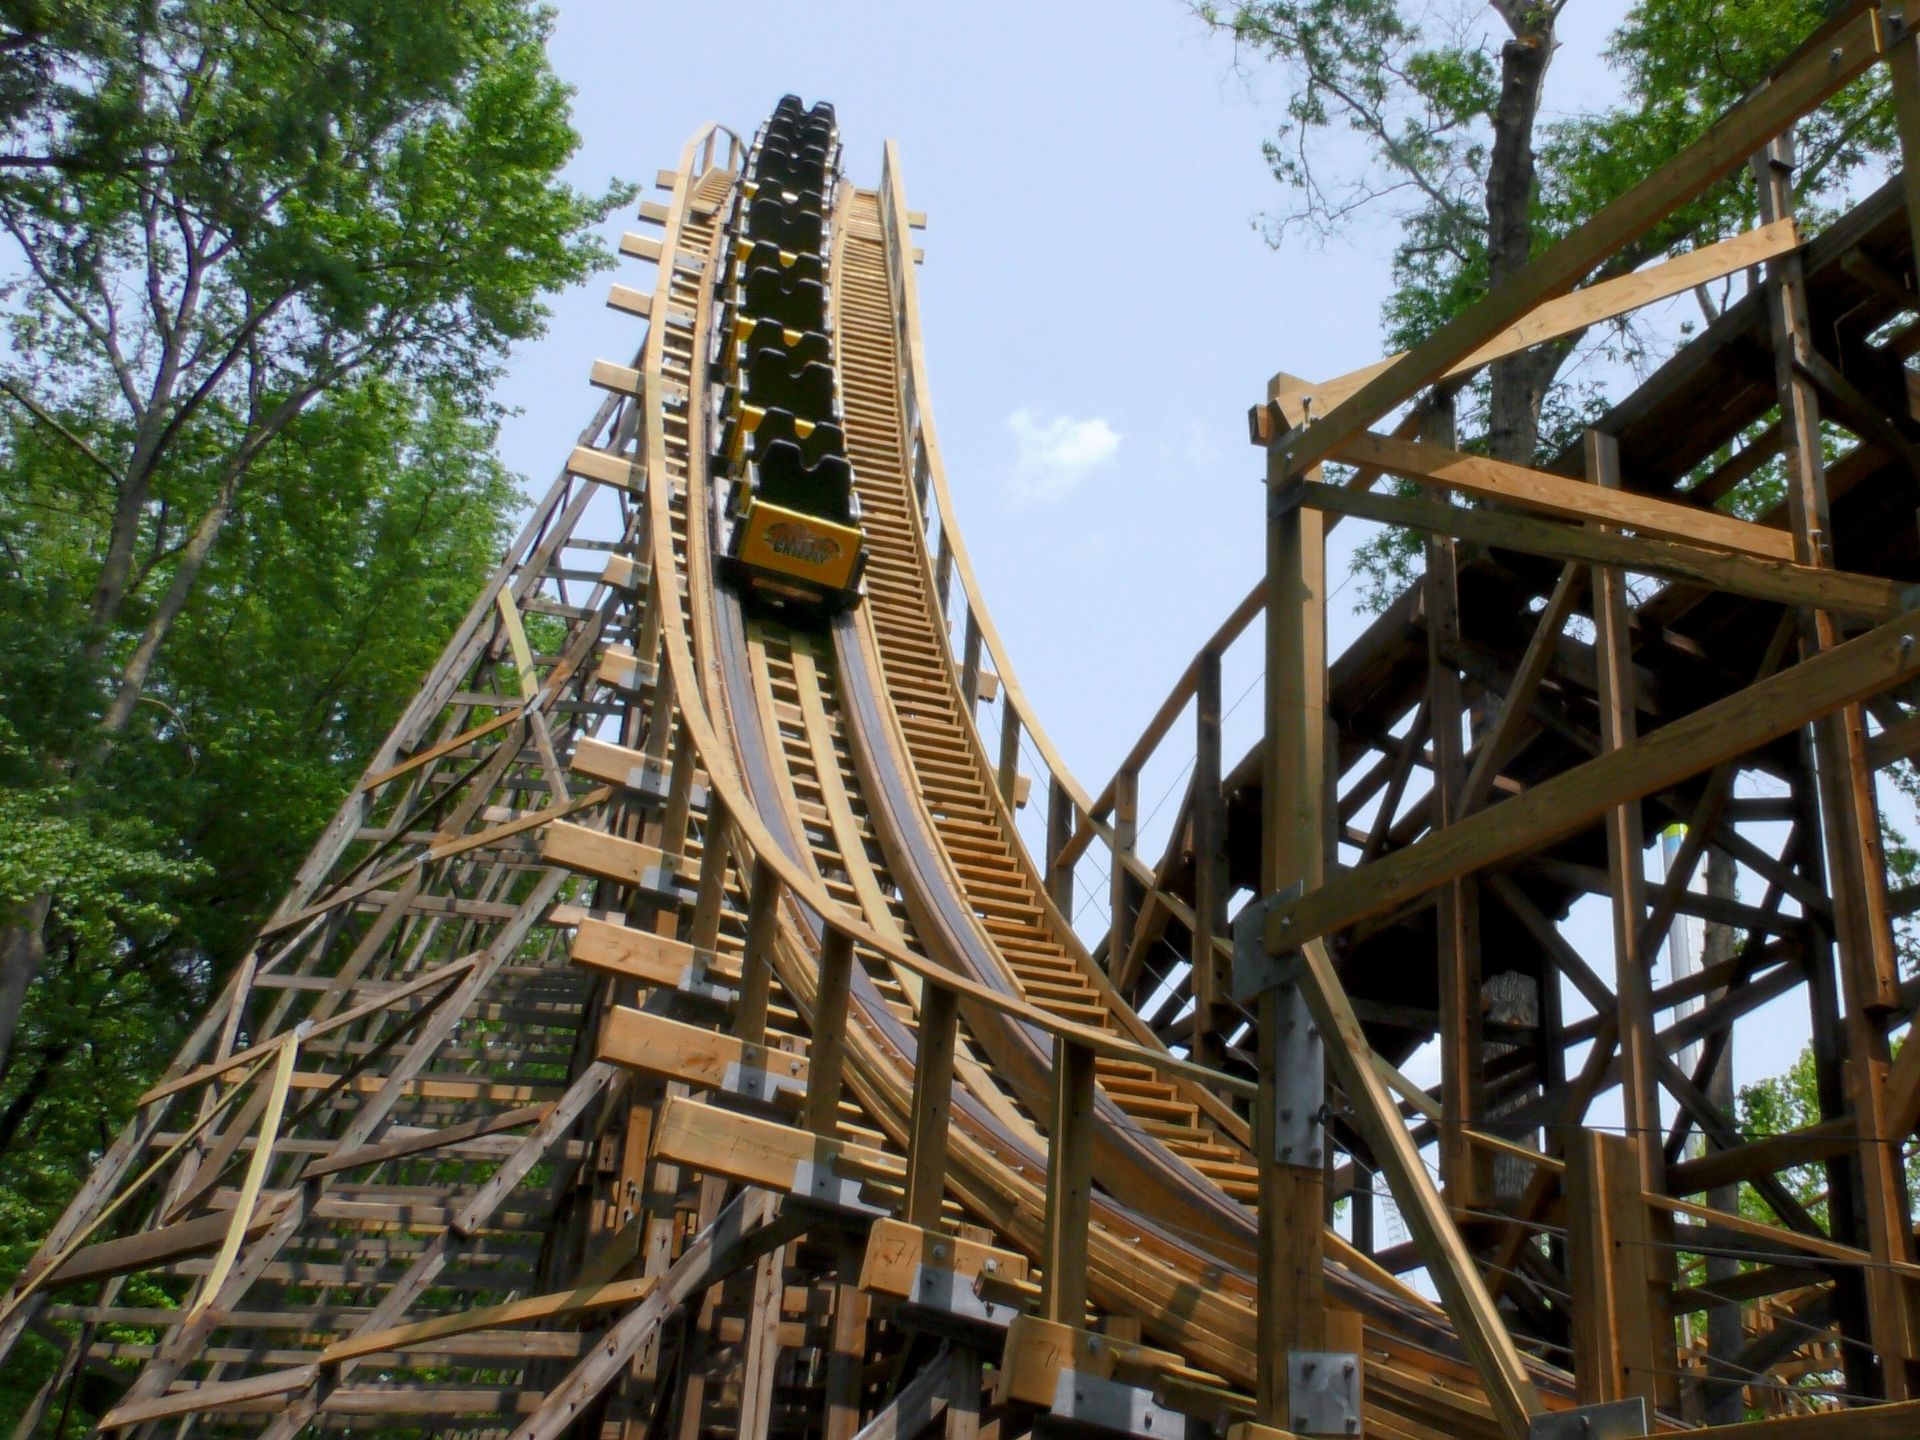 Virginia Roller Coasters - Steel, Wooden